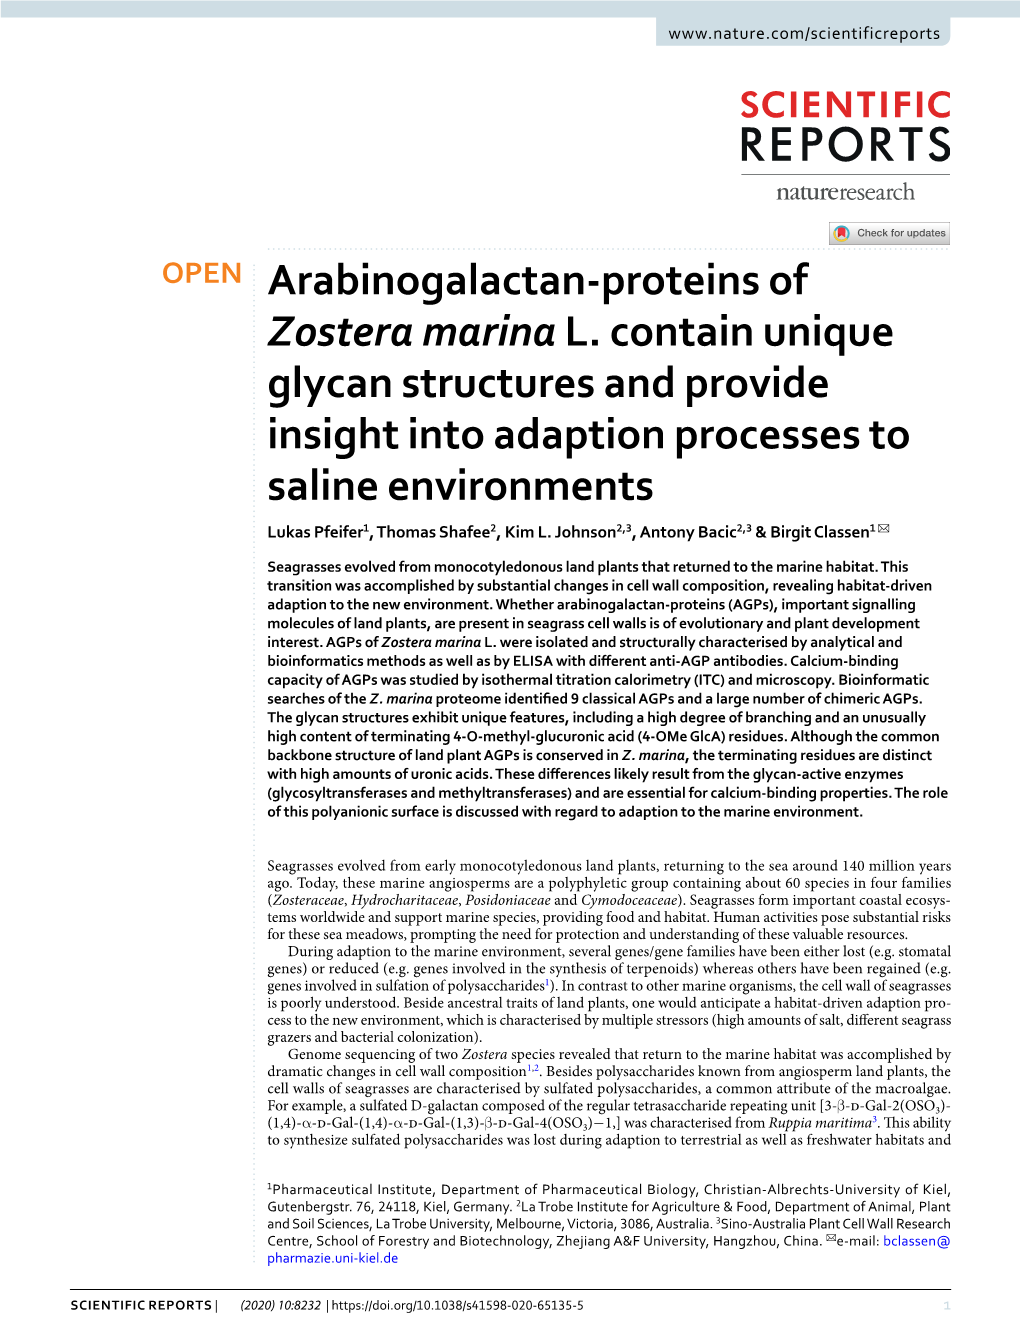 Arabinogalactan-Proteins of Zostera Marina L. Contain Unique Glycan